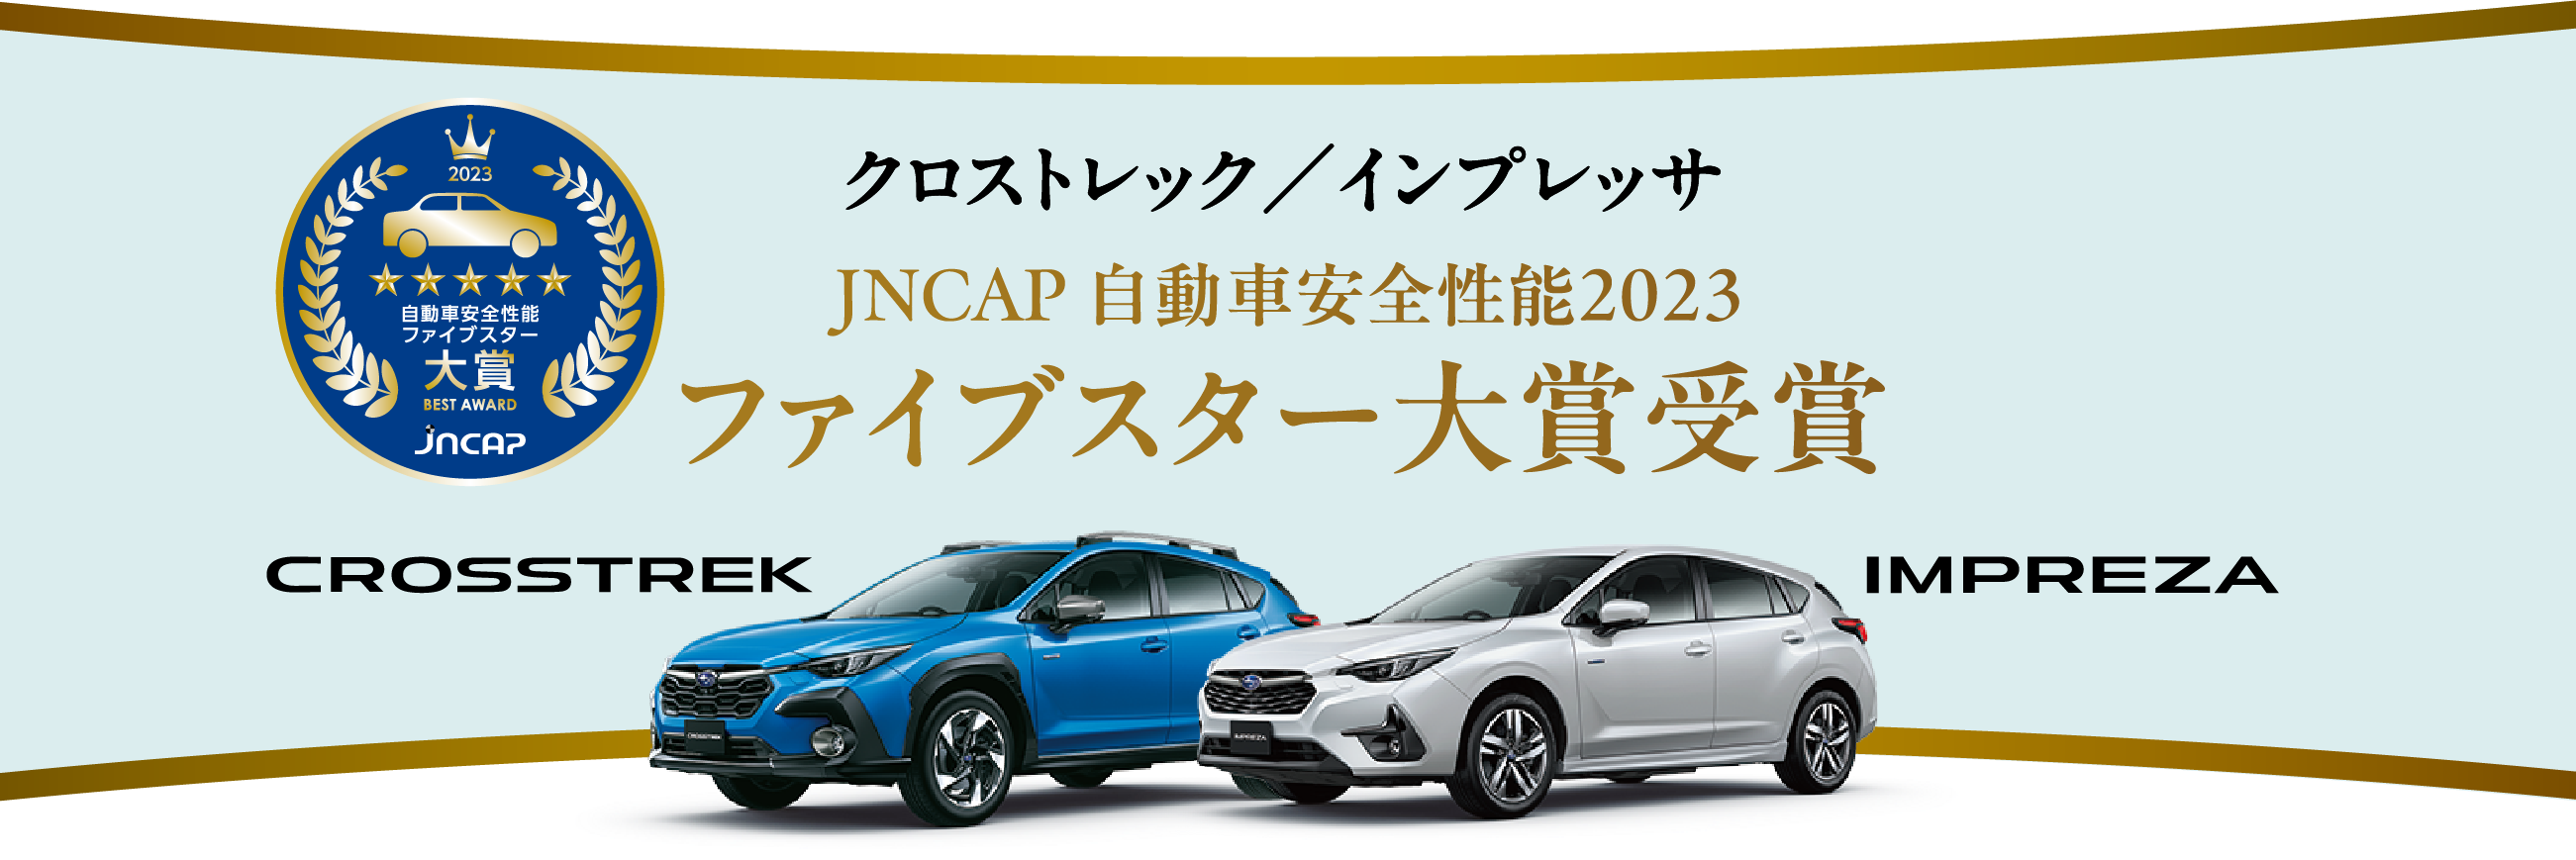 クロストレック・インプレッサ JNCAP自動車安全性能2023ファイブスター大賞受賞